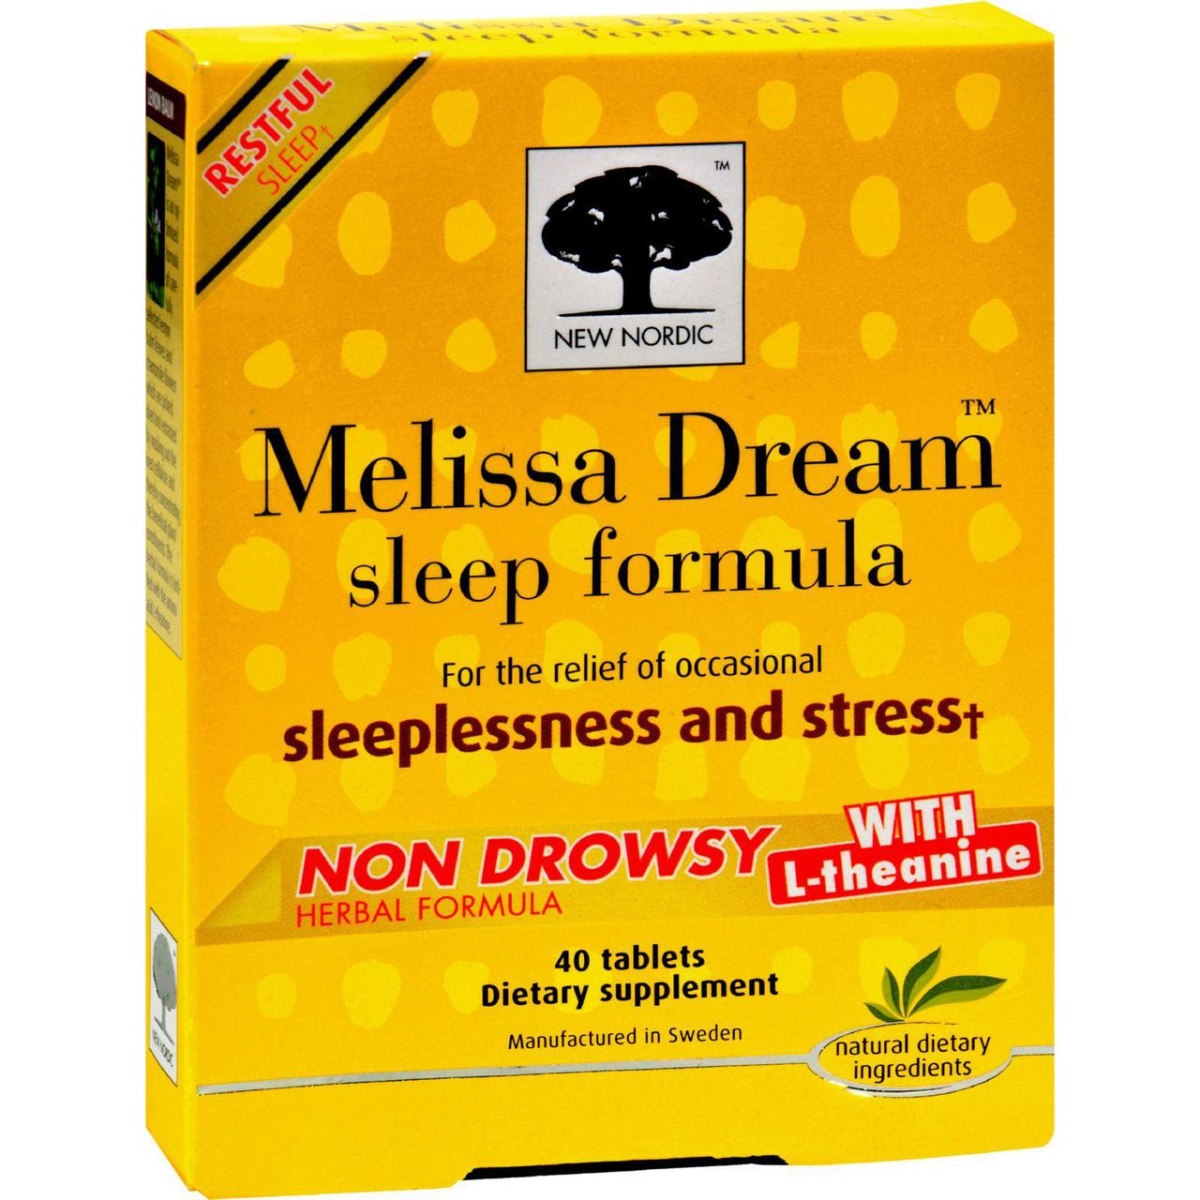 Hg1519107 Melissa Dream - 40 Tablets